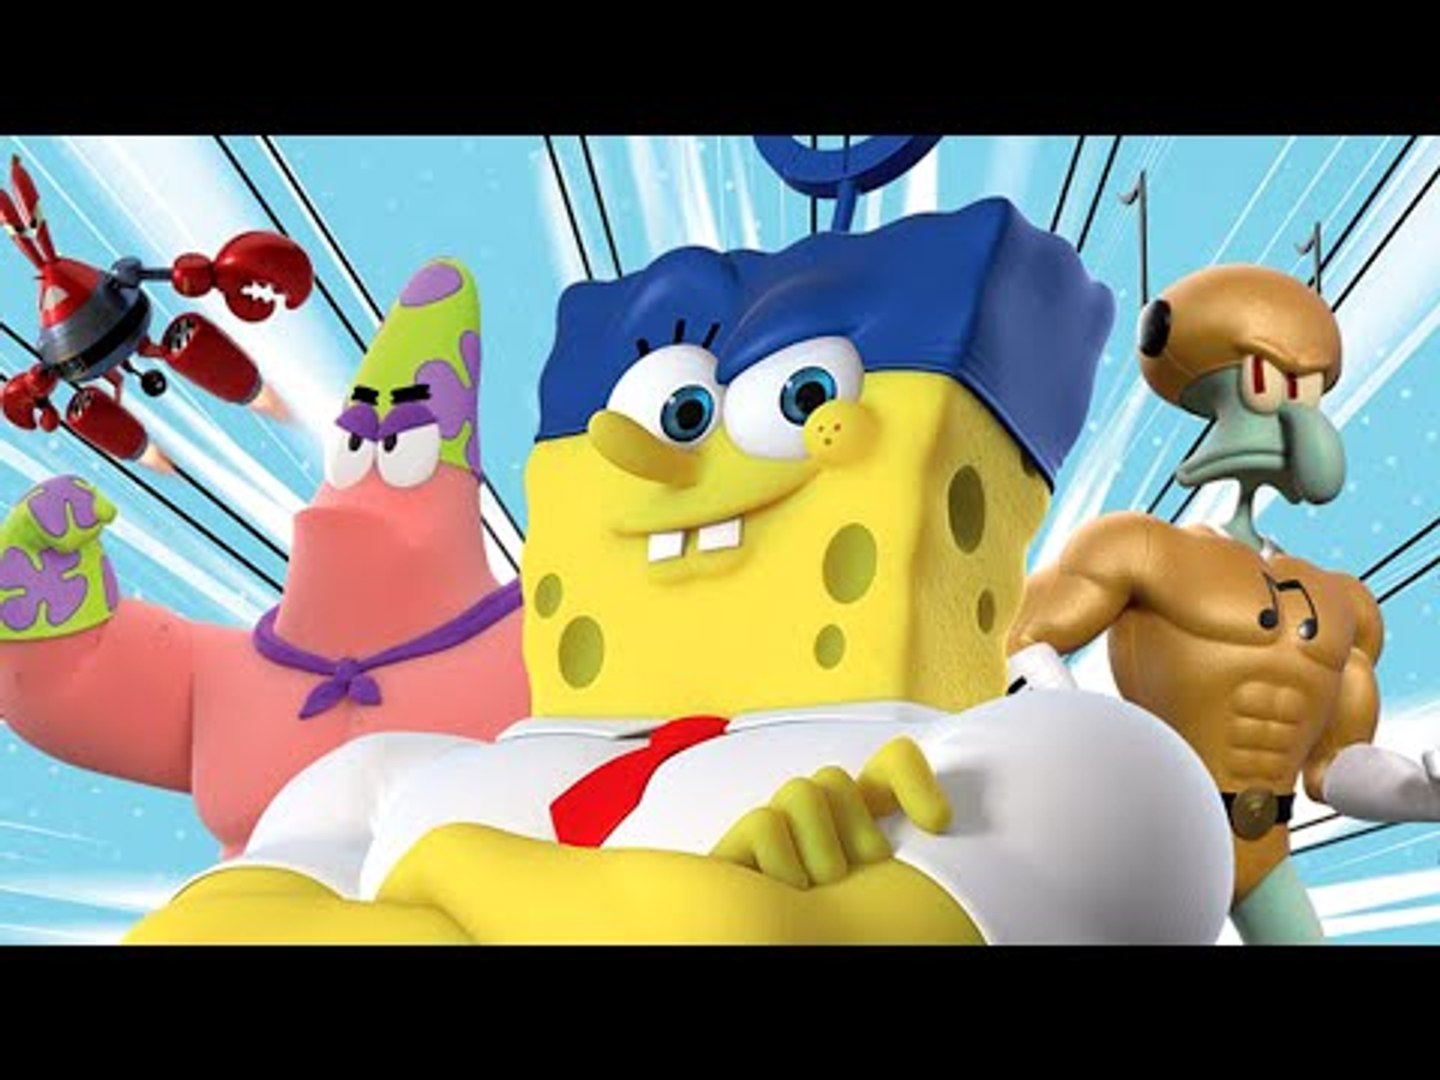 فيلم كرتون سبونج بوب خارج الماء كامل بالعربي SpongeBob SquarePants Game |  ولعبة كمبيوتر وبلاي ستيشن - video Dailymotion